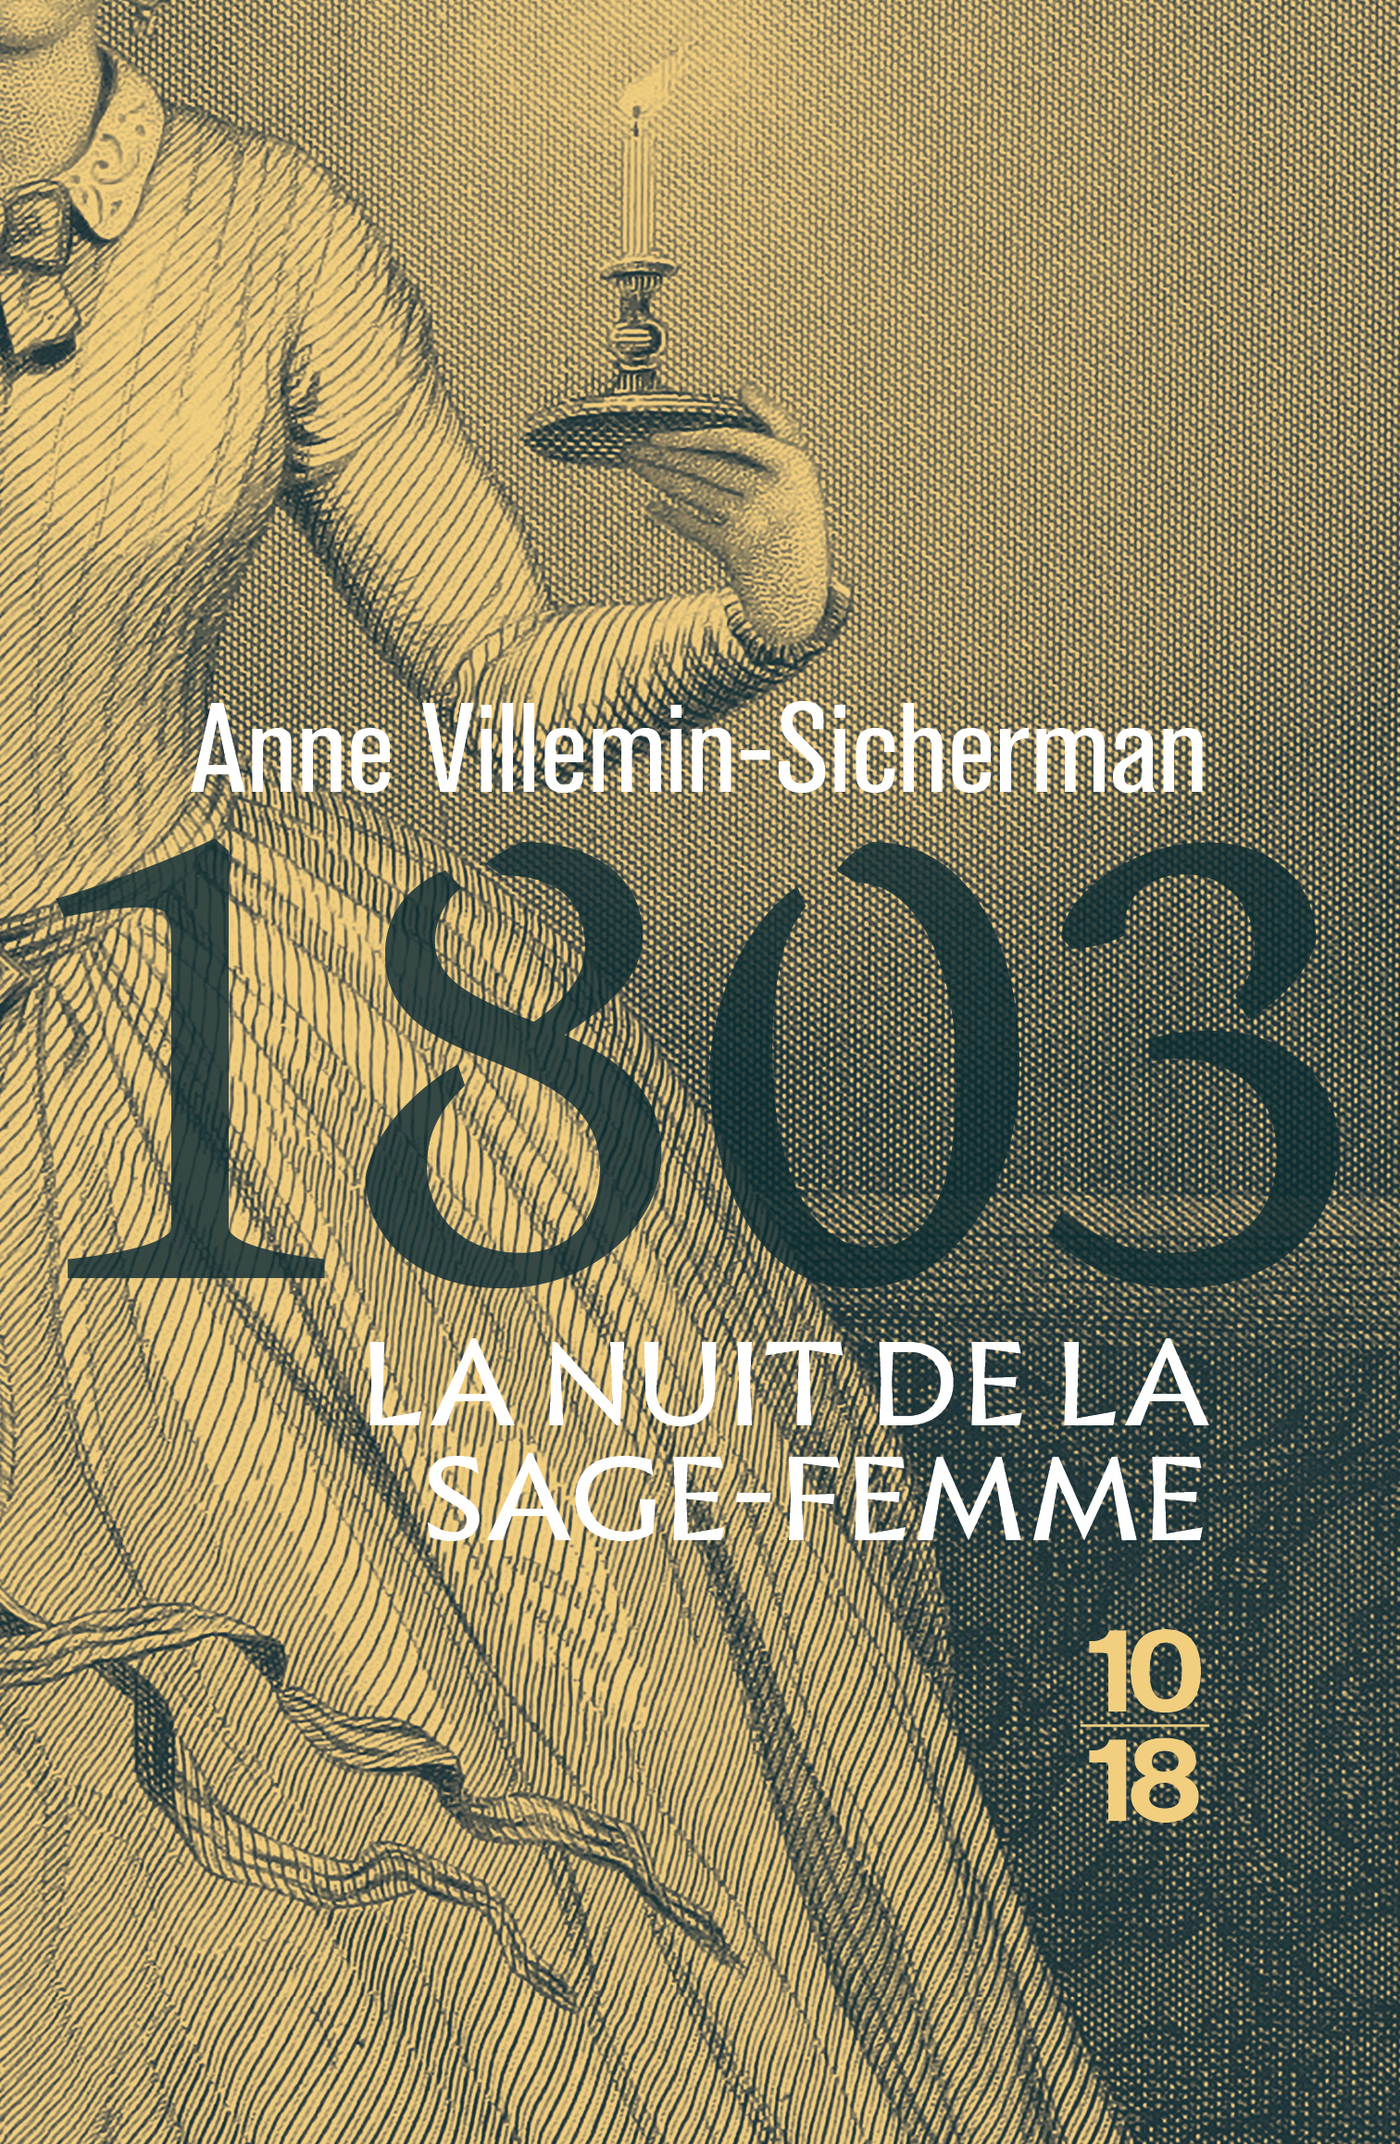 Afficher "1803, La nuit de la sage femme"